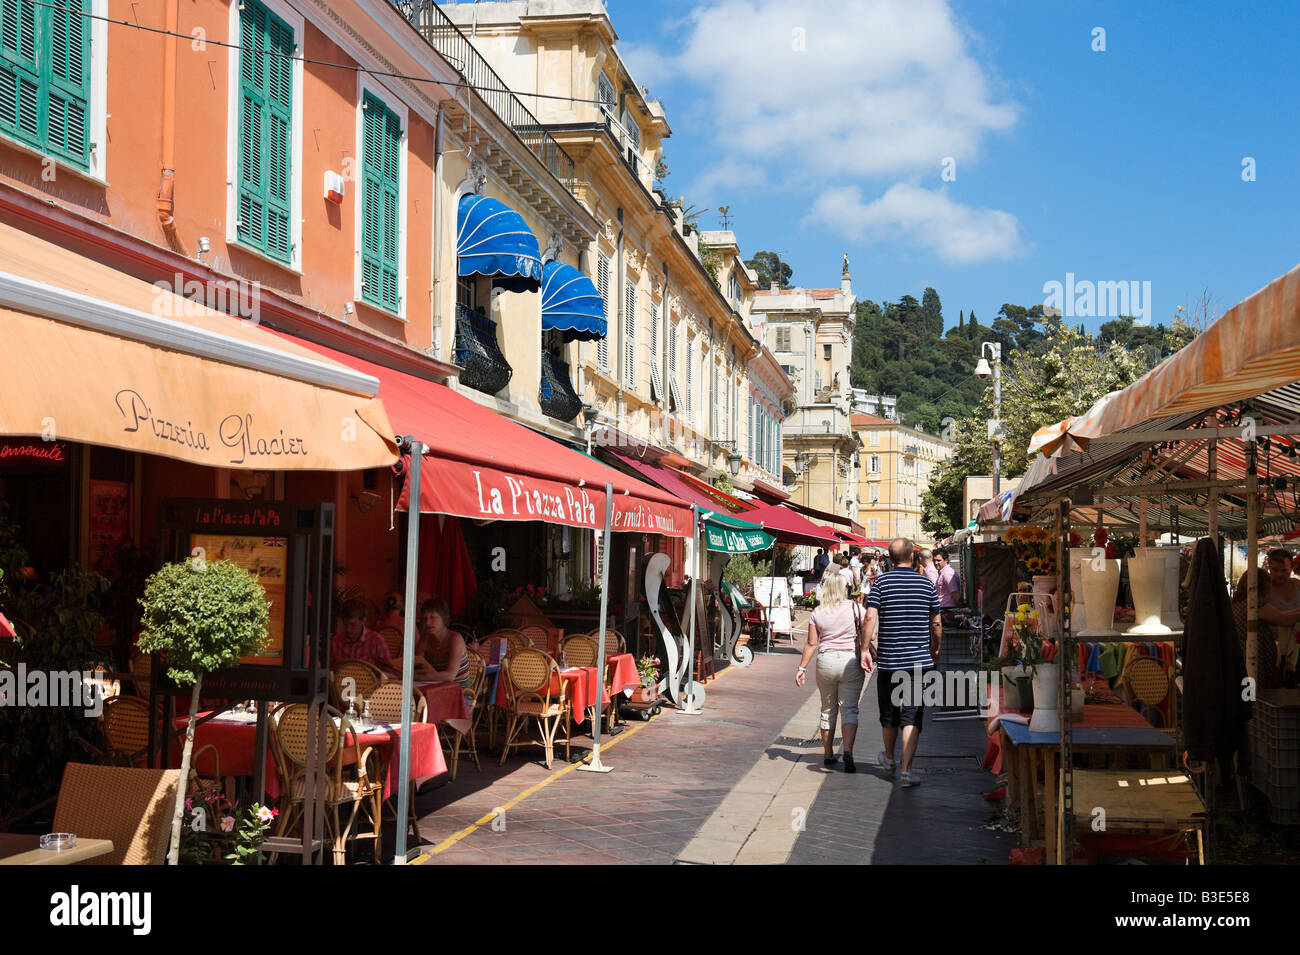 Ristoranti e mercato di Cours Saleya nella città vecchia (Vieux Nice), Nizza Cote d'Azur, Costa Azzurra, Francia Foto Stock